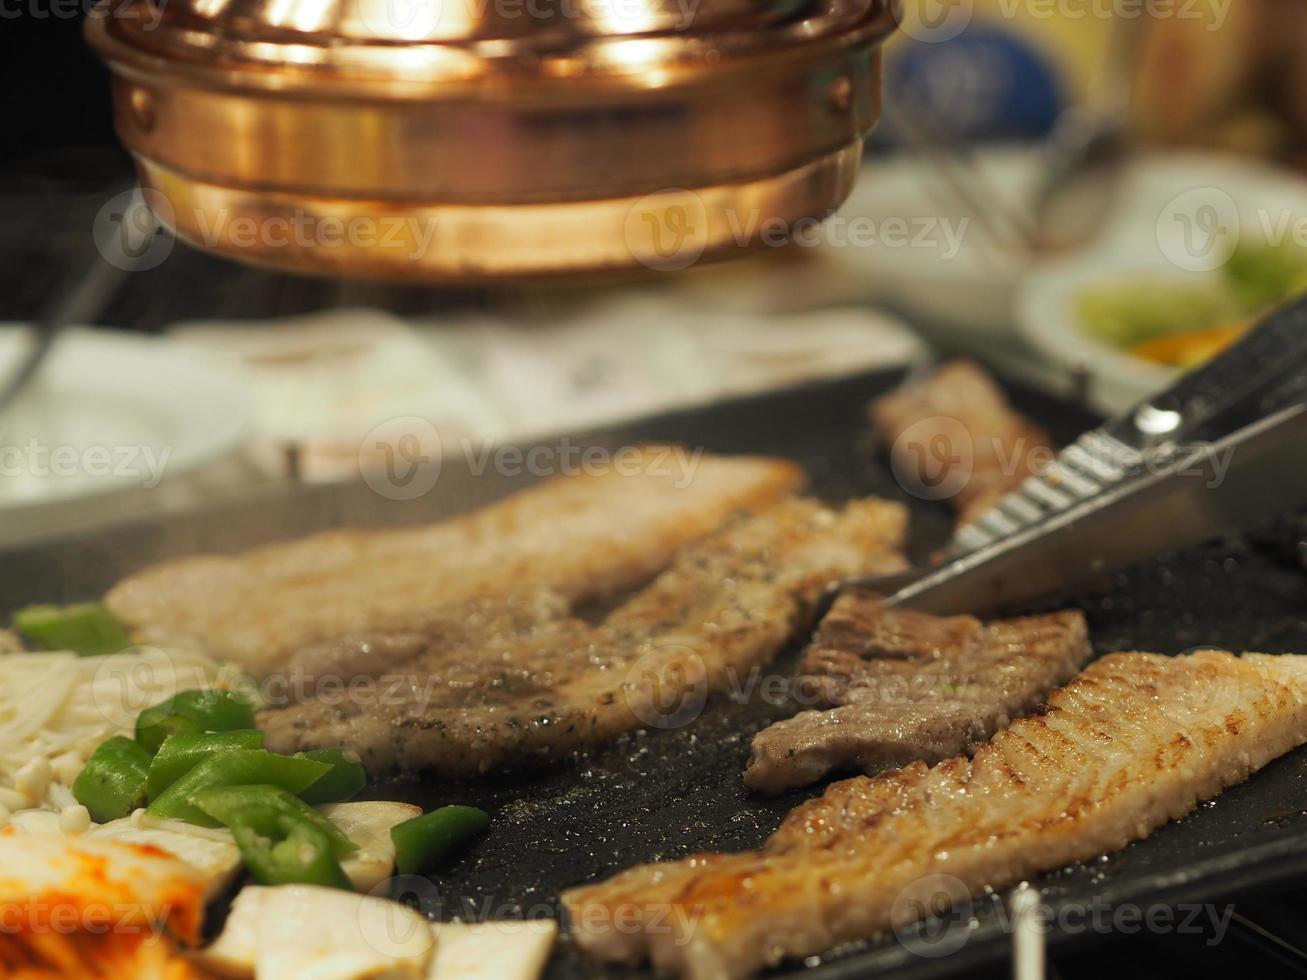 grillat fläsk är på pannan i thailändsk stil, thai buffé med fläsk, kyckling och annat kött, tillagat på mässingsgrillpanna, fläskgrill, bar-bq, thailändsk grill, koreansk grill yakiniku mat fläsk foto